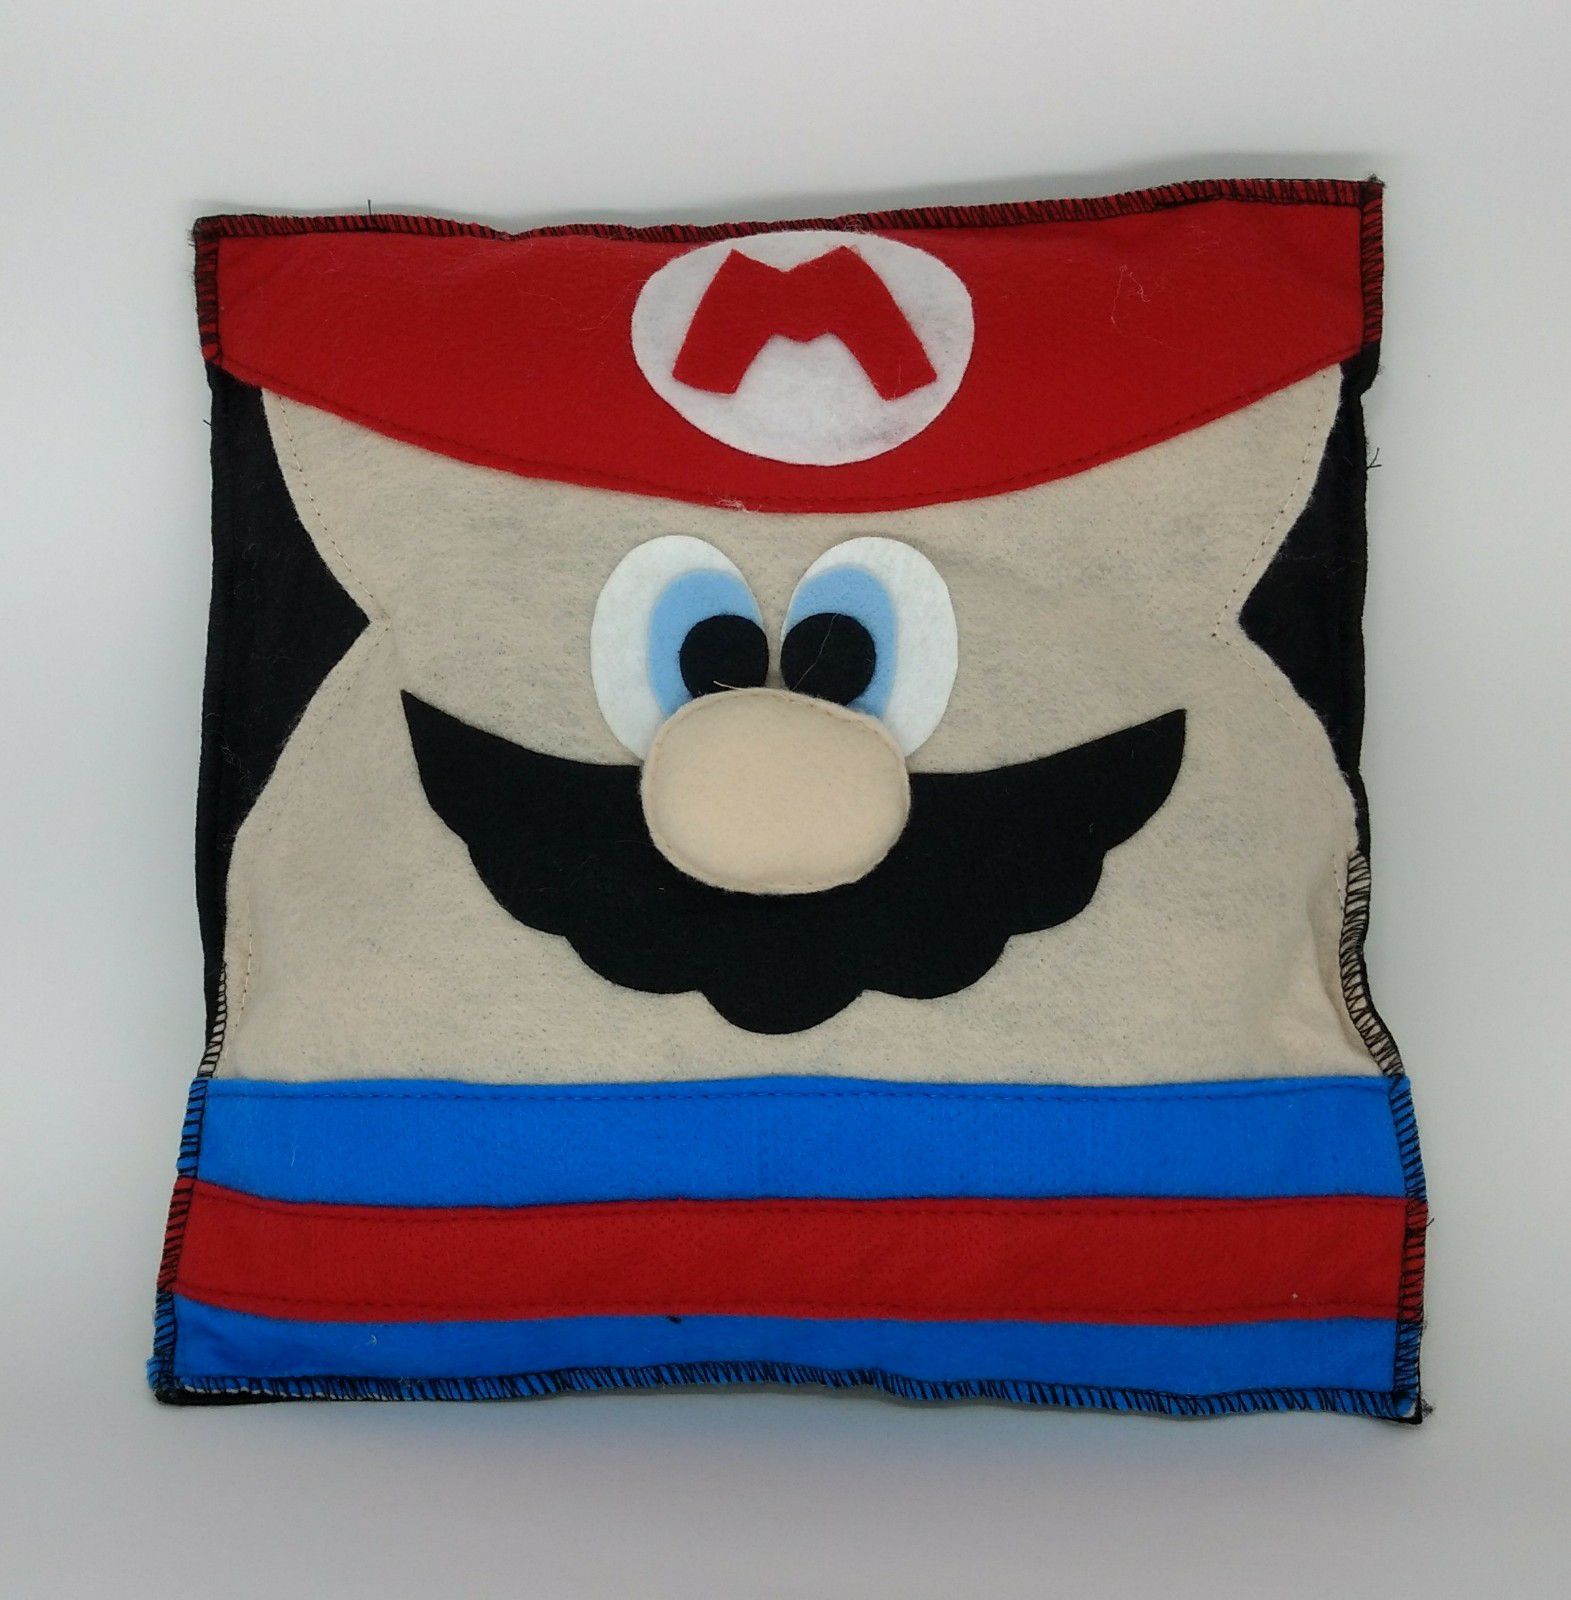 Almofada Mario - Eu quero jogar um jogo